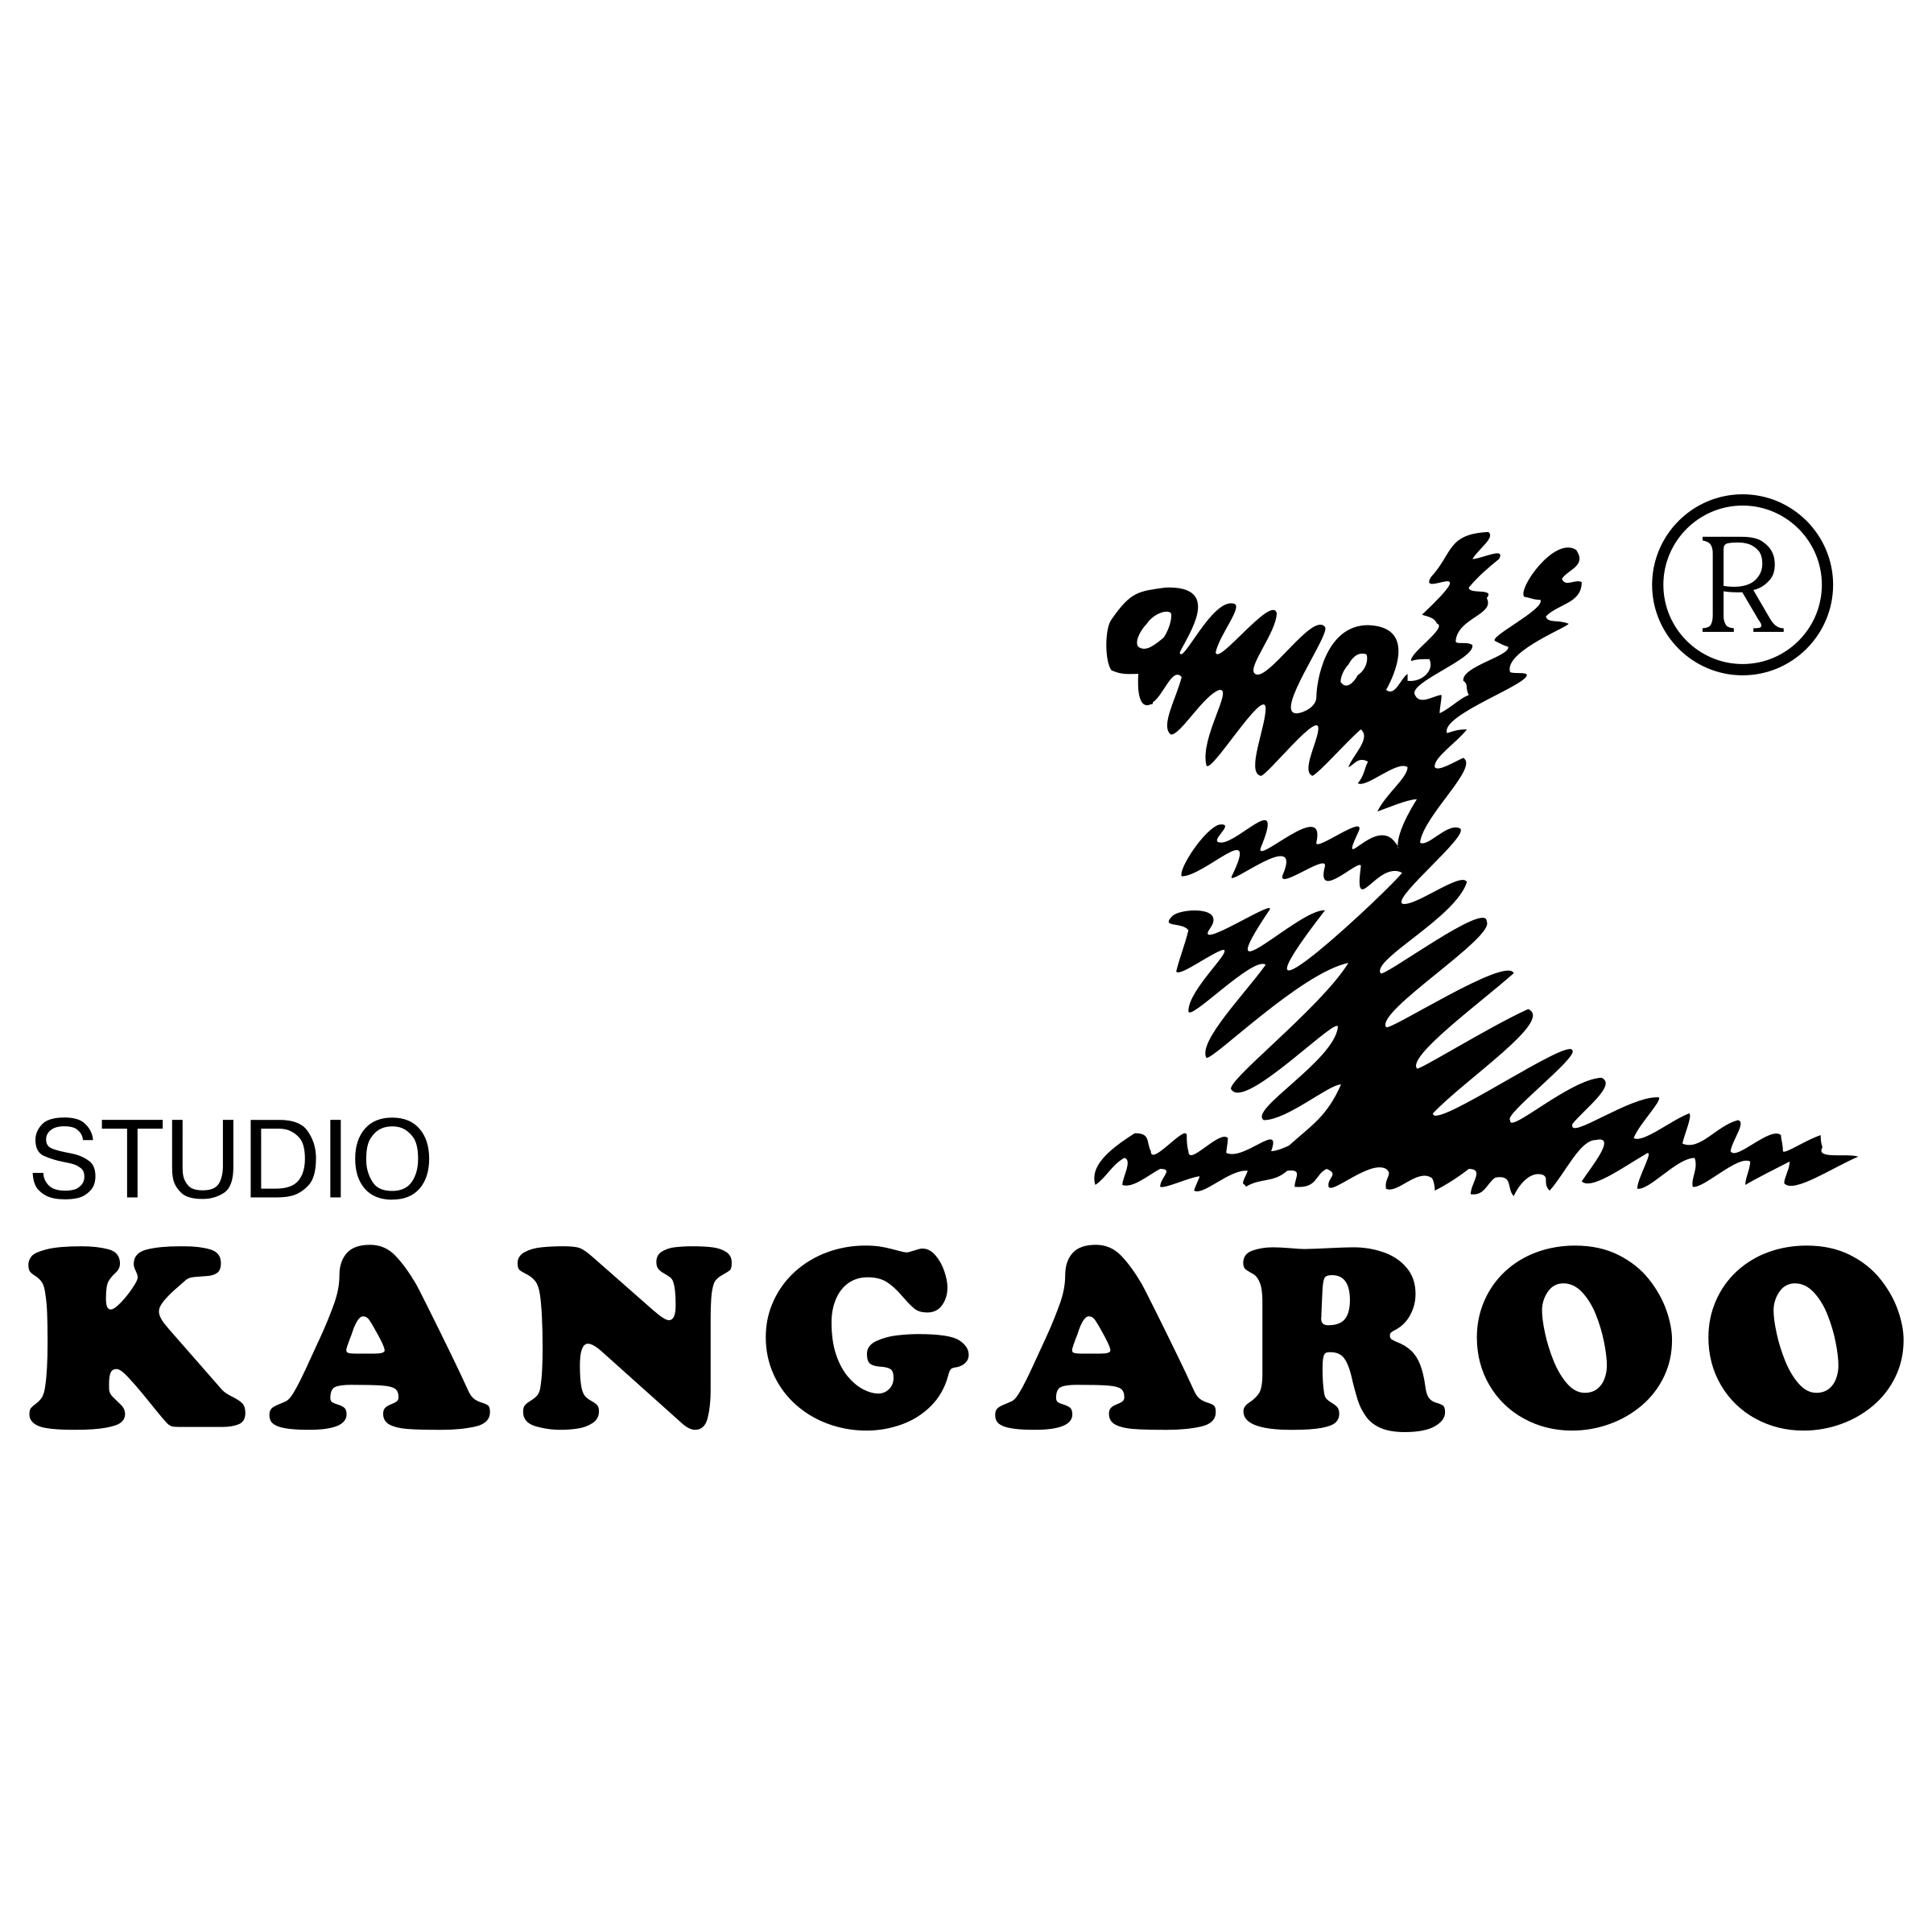 White Kangaroo Logo - Kangaroo Logo PNG Transparent & SVG Vector - Freebie Supply